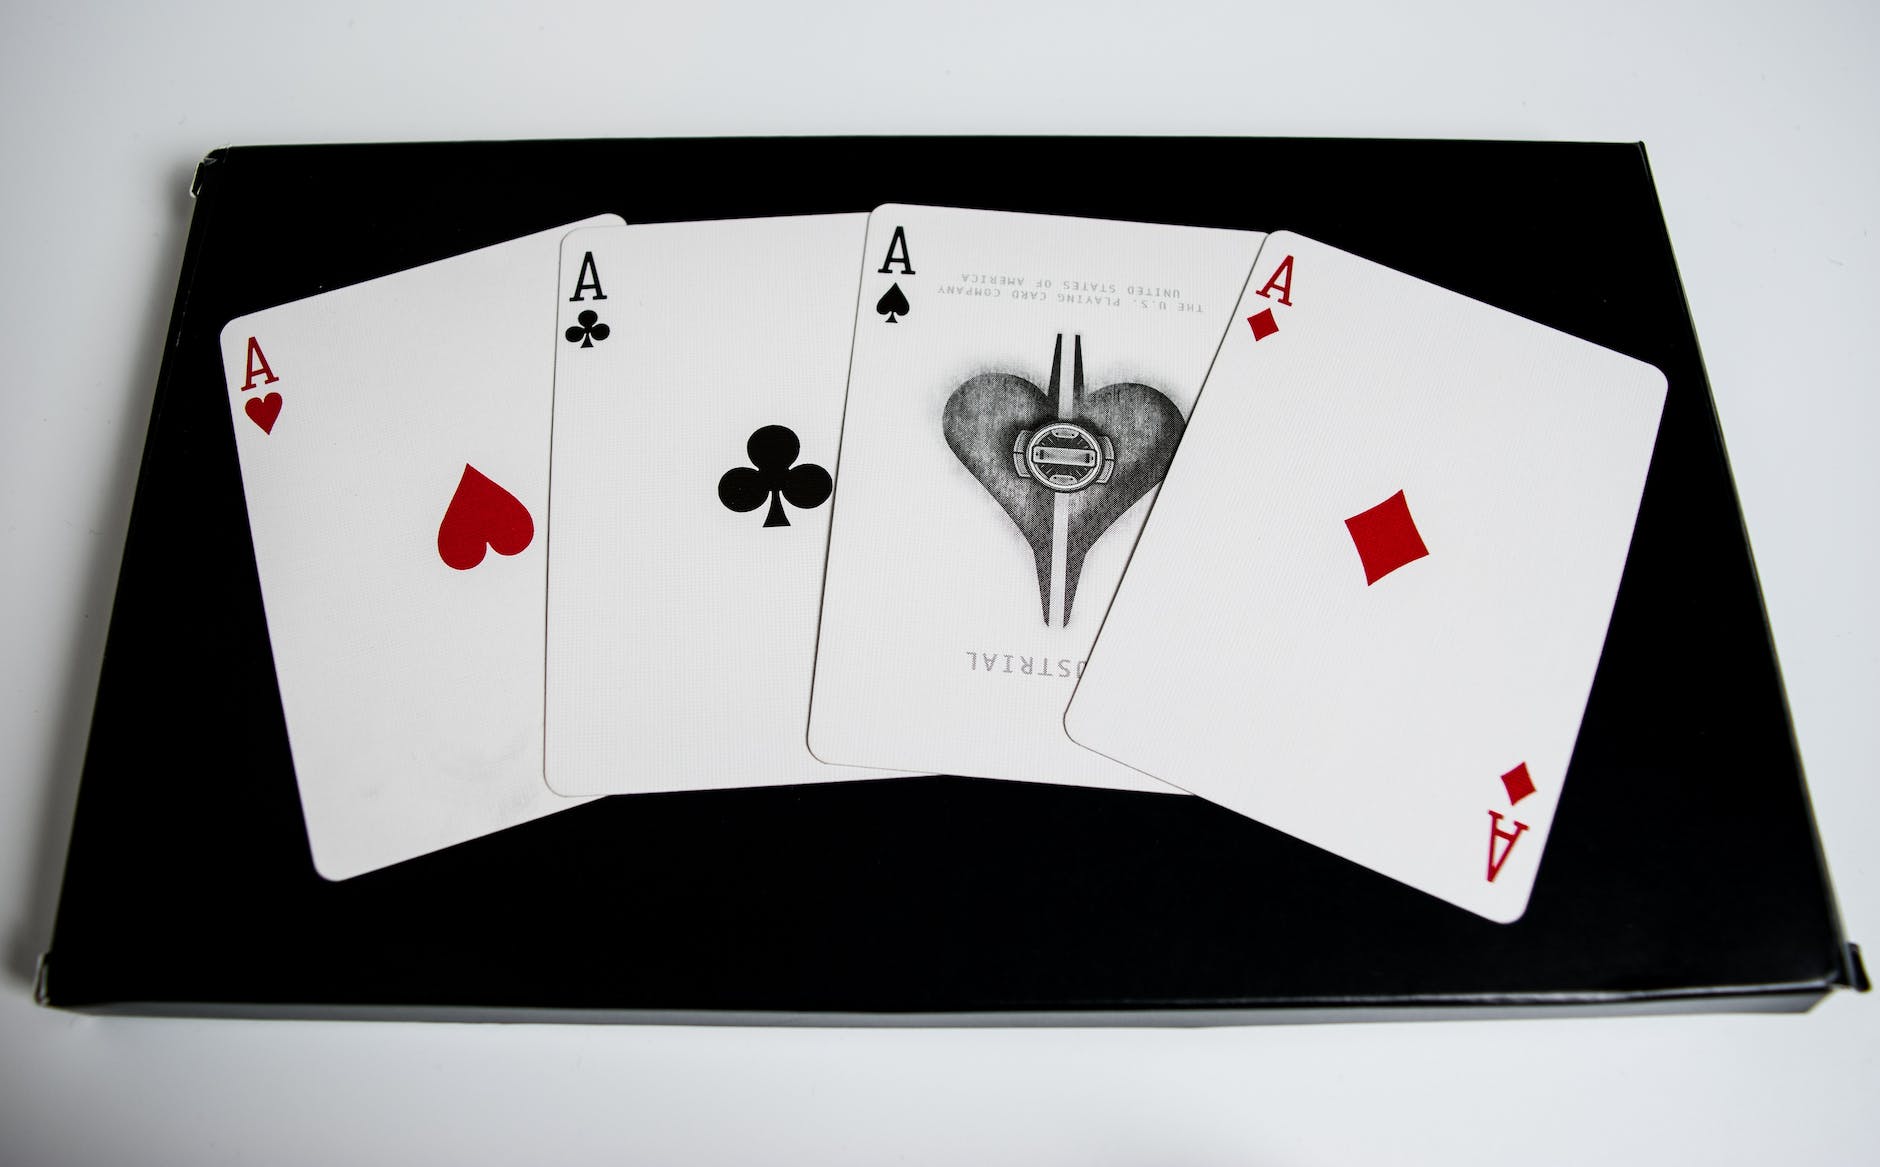 3 card poker tips